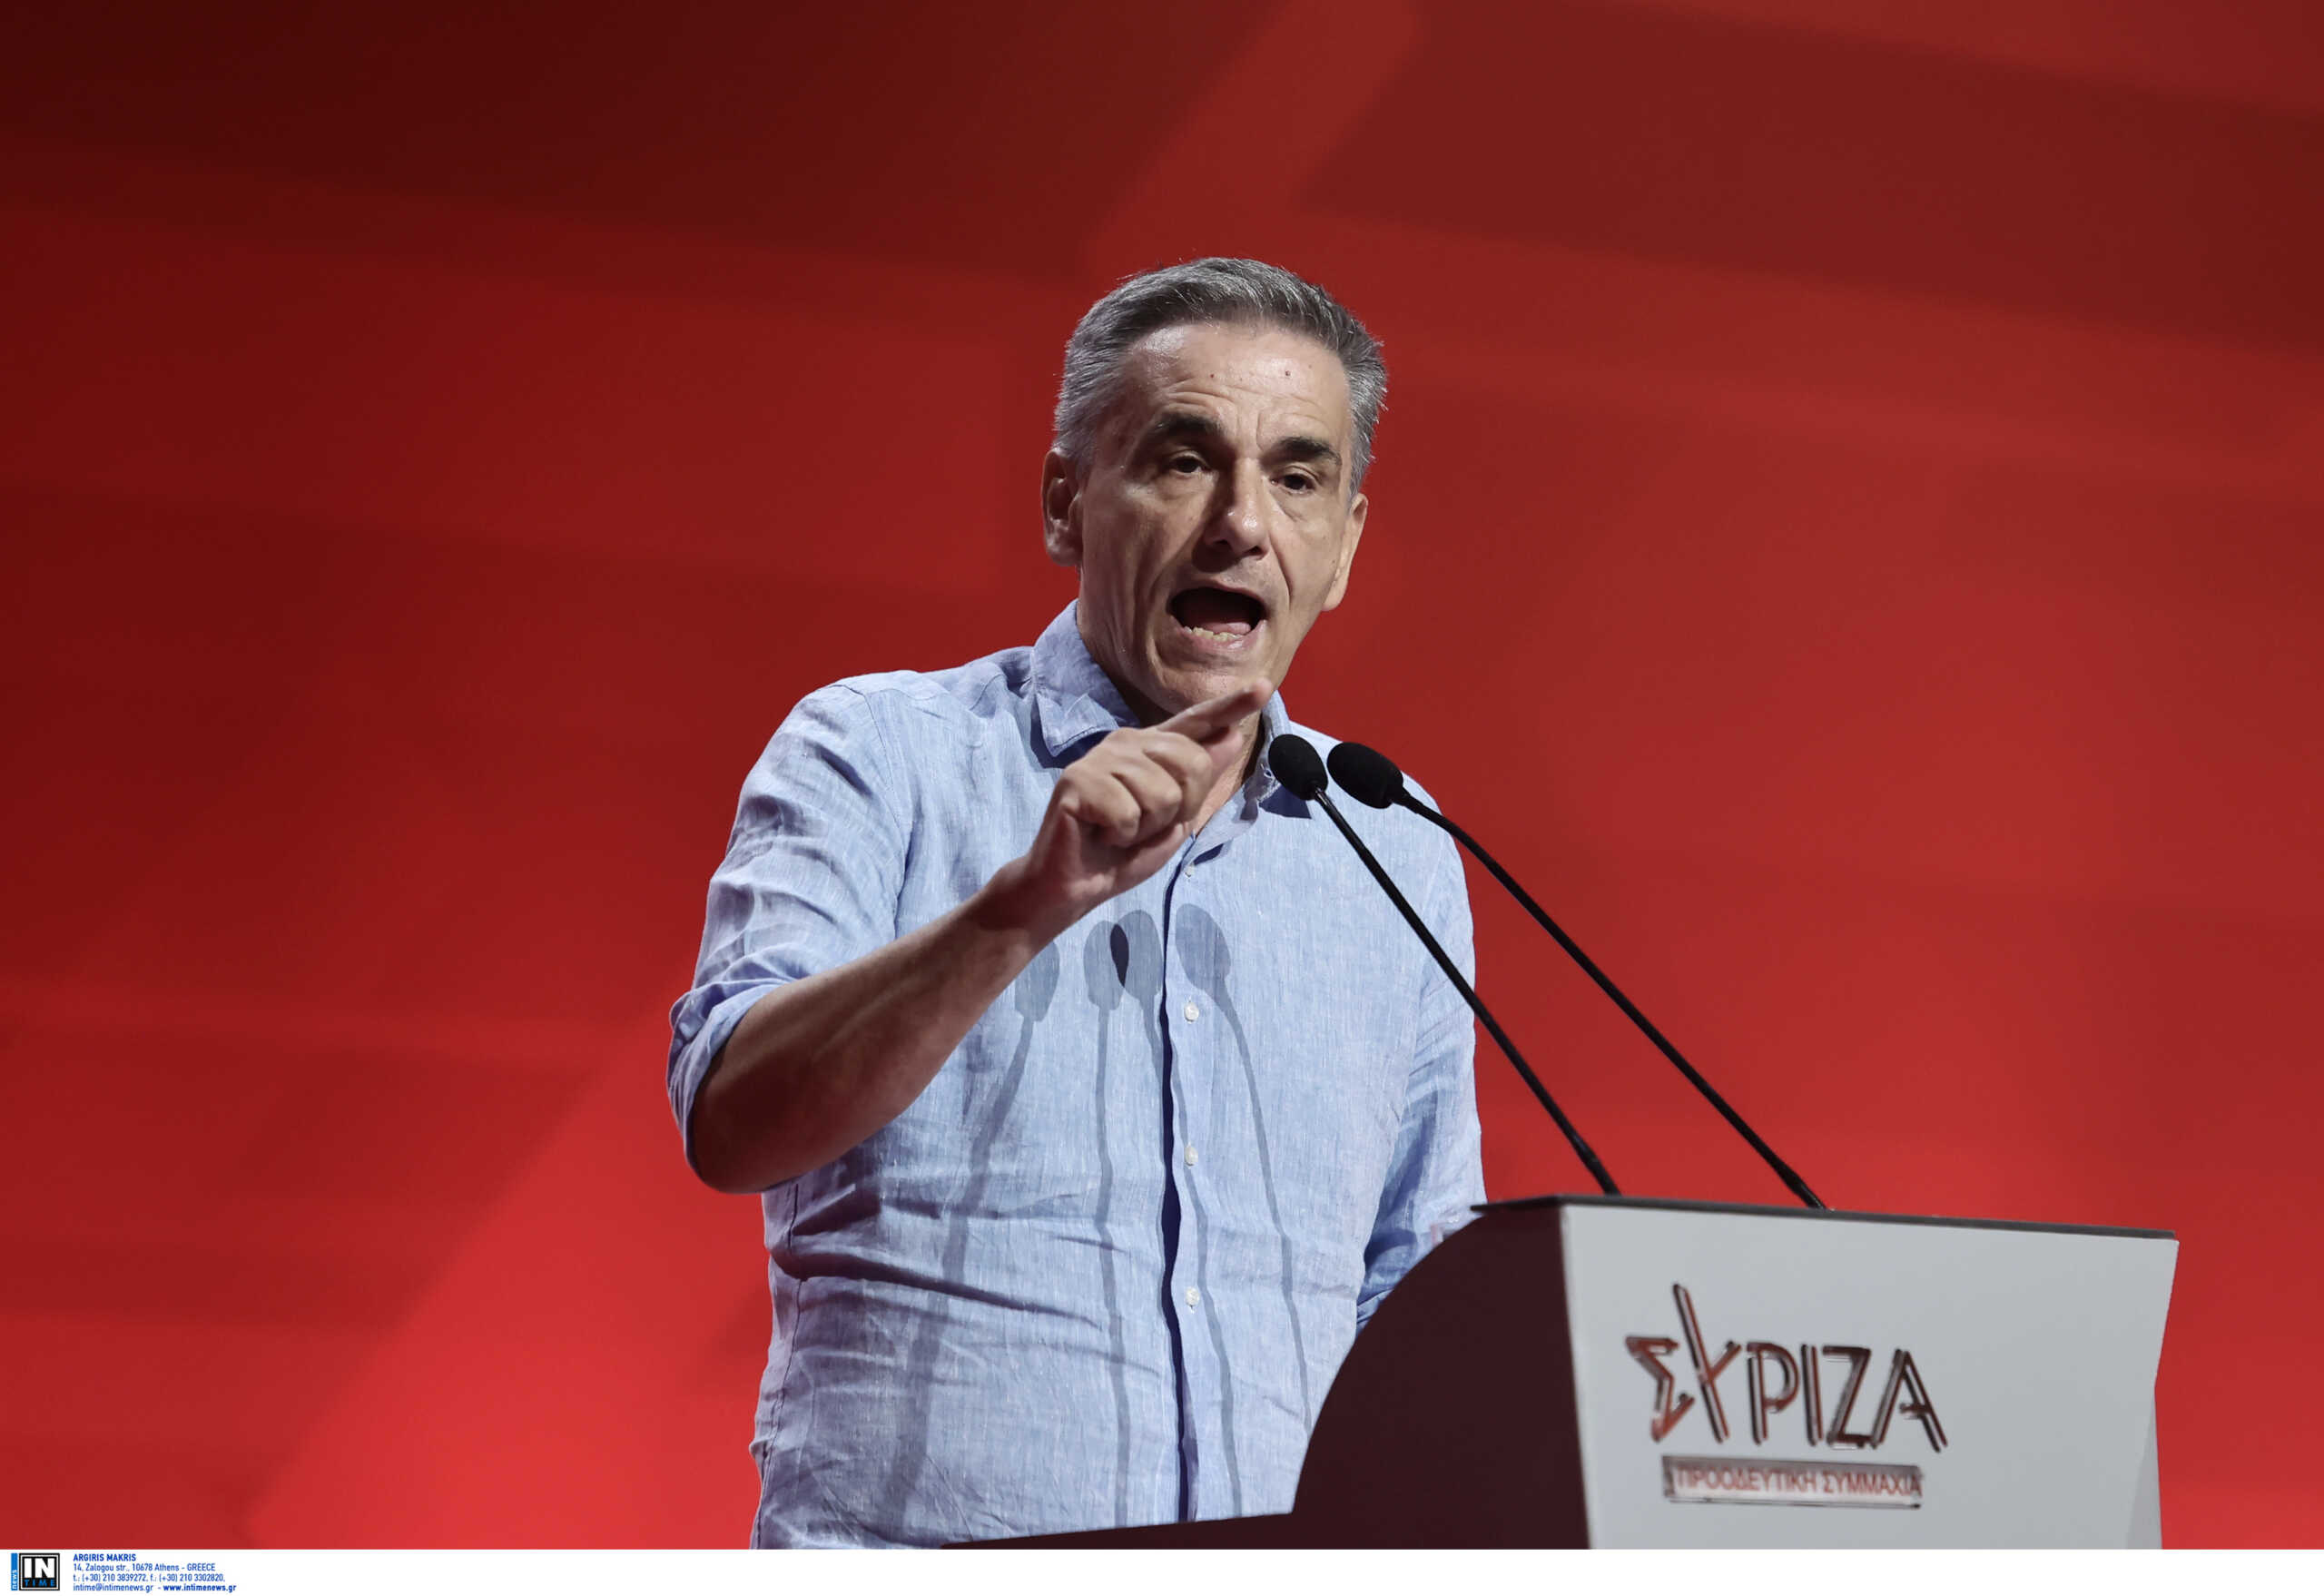 Τσακαλώτος για εκλογές ΣΥΡΙΖΑ: Το τελευταίο του σποτ πριν ανοίξουν οι κάλπες